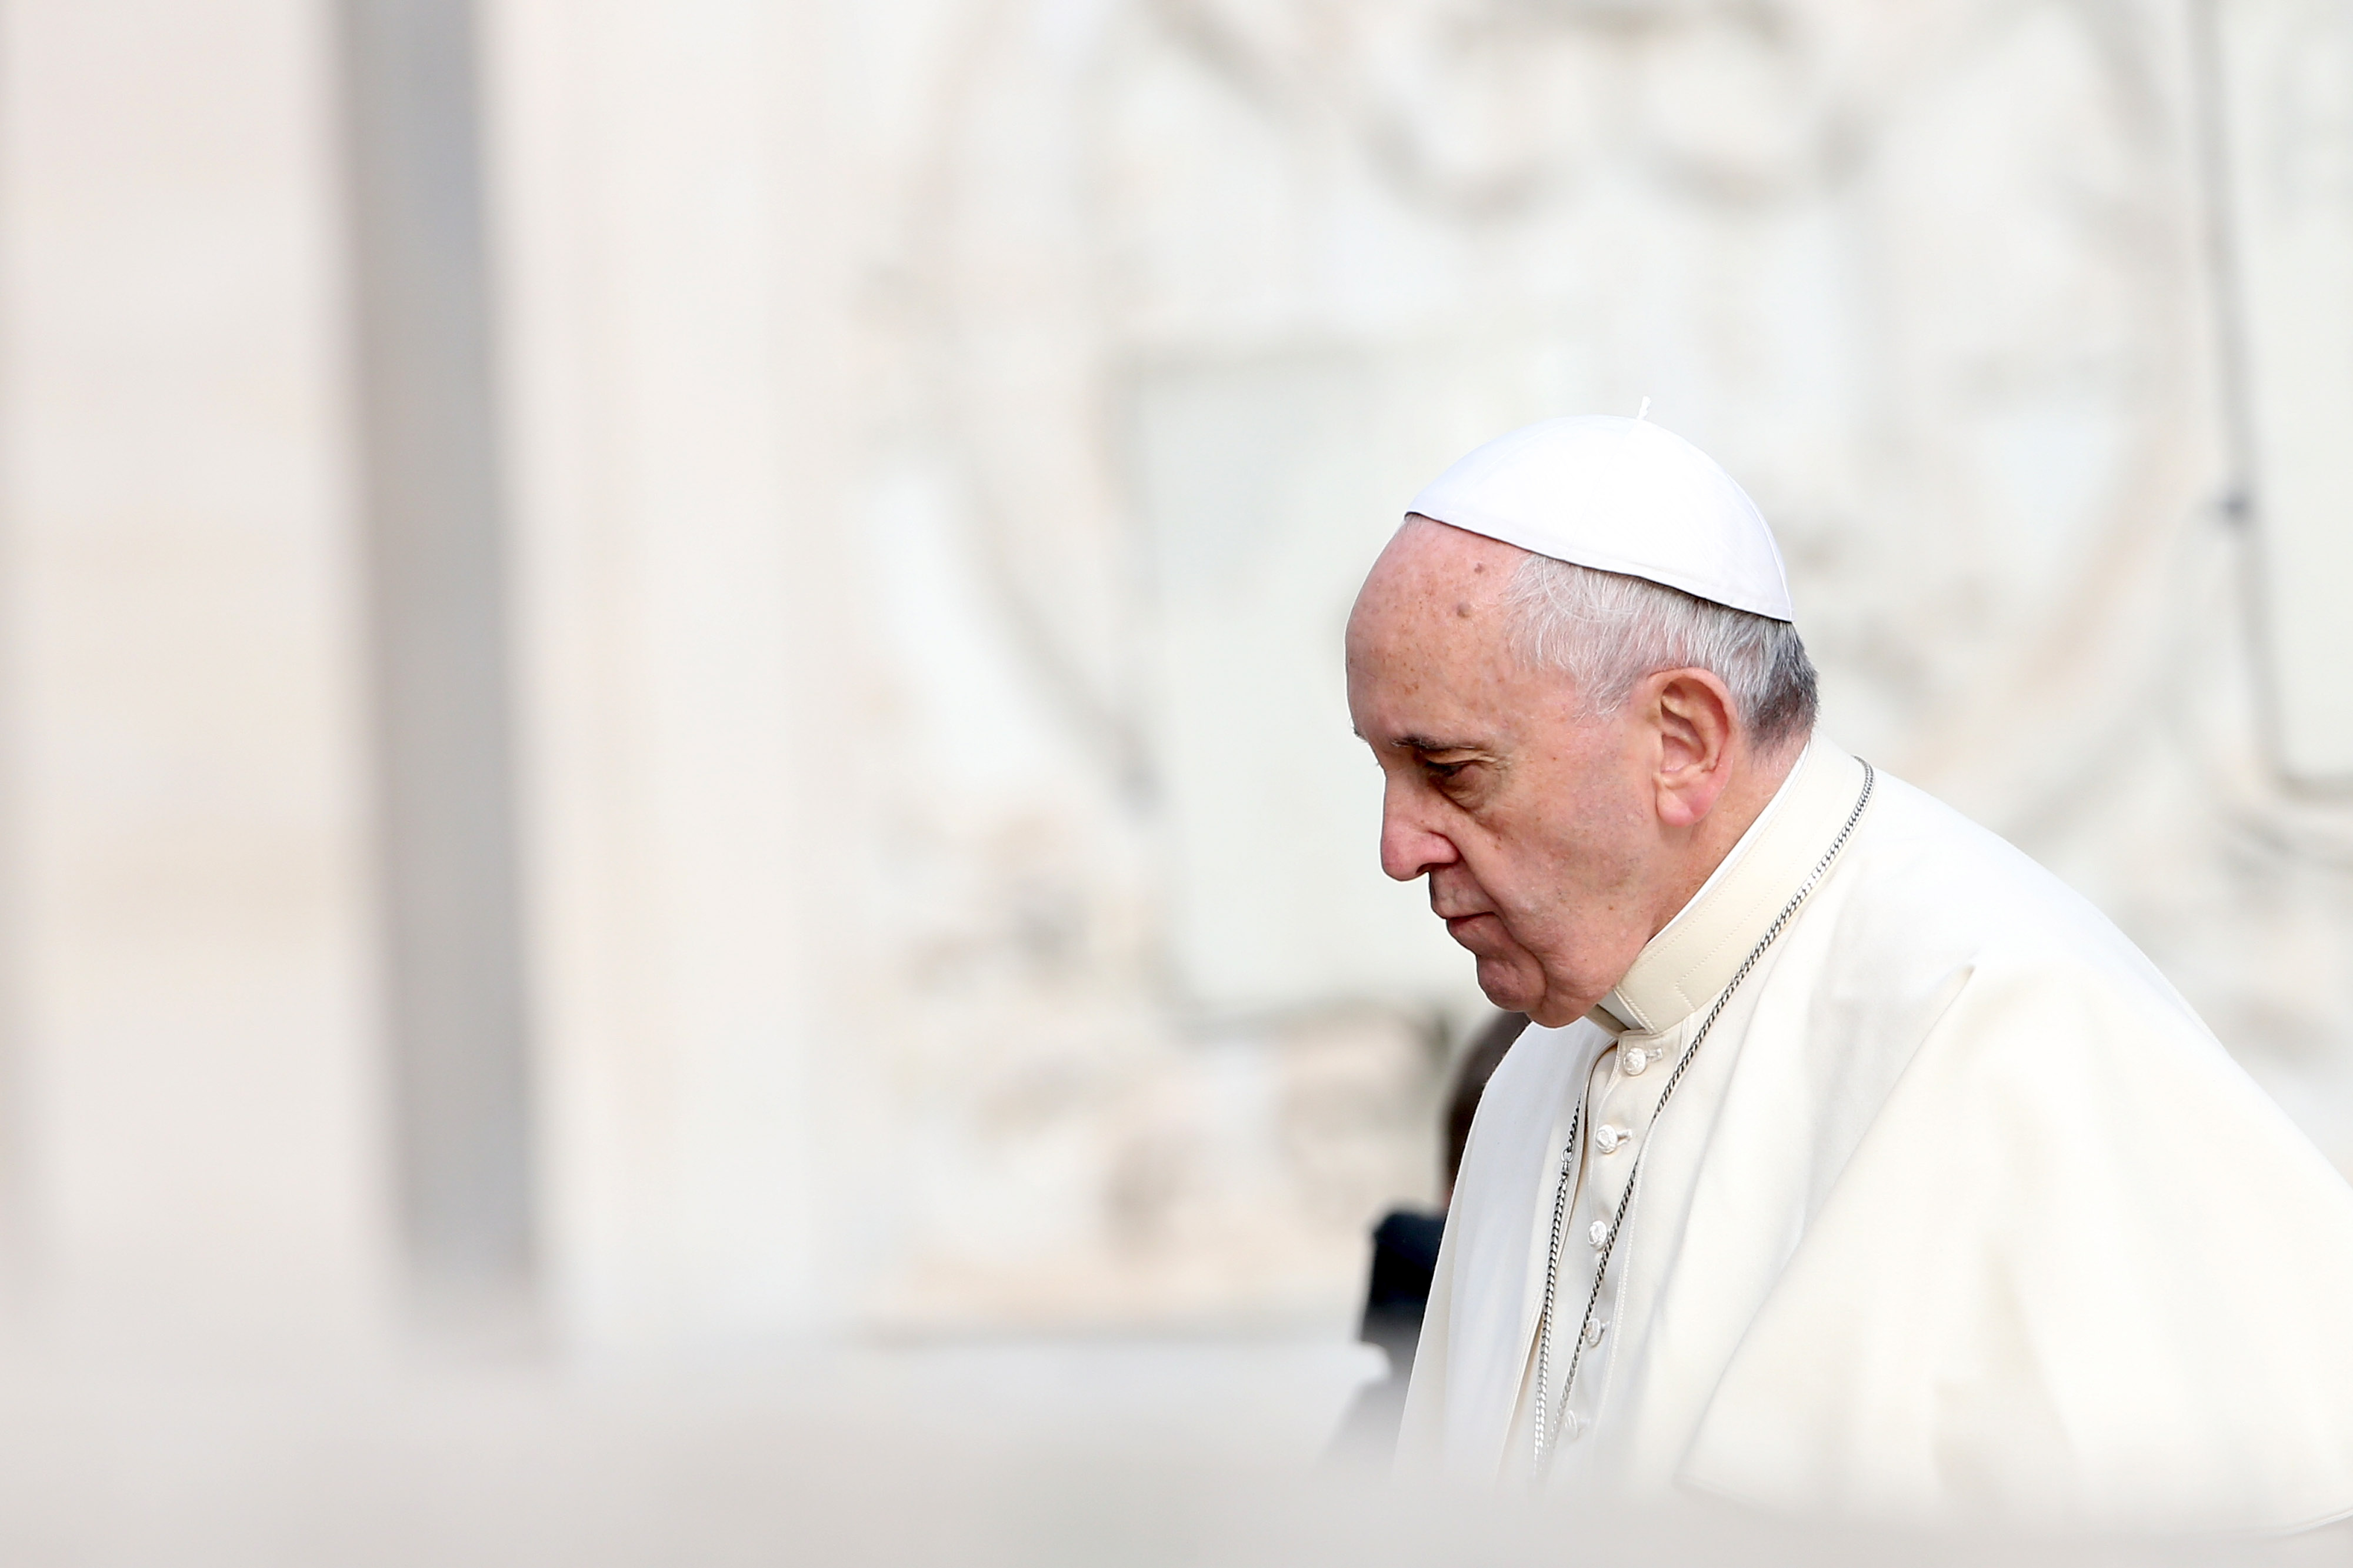 Papst prangert Skandalpresse an und vergleicht deren Leser mit Exkrementen-Essern